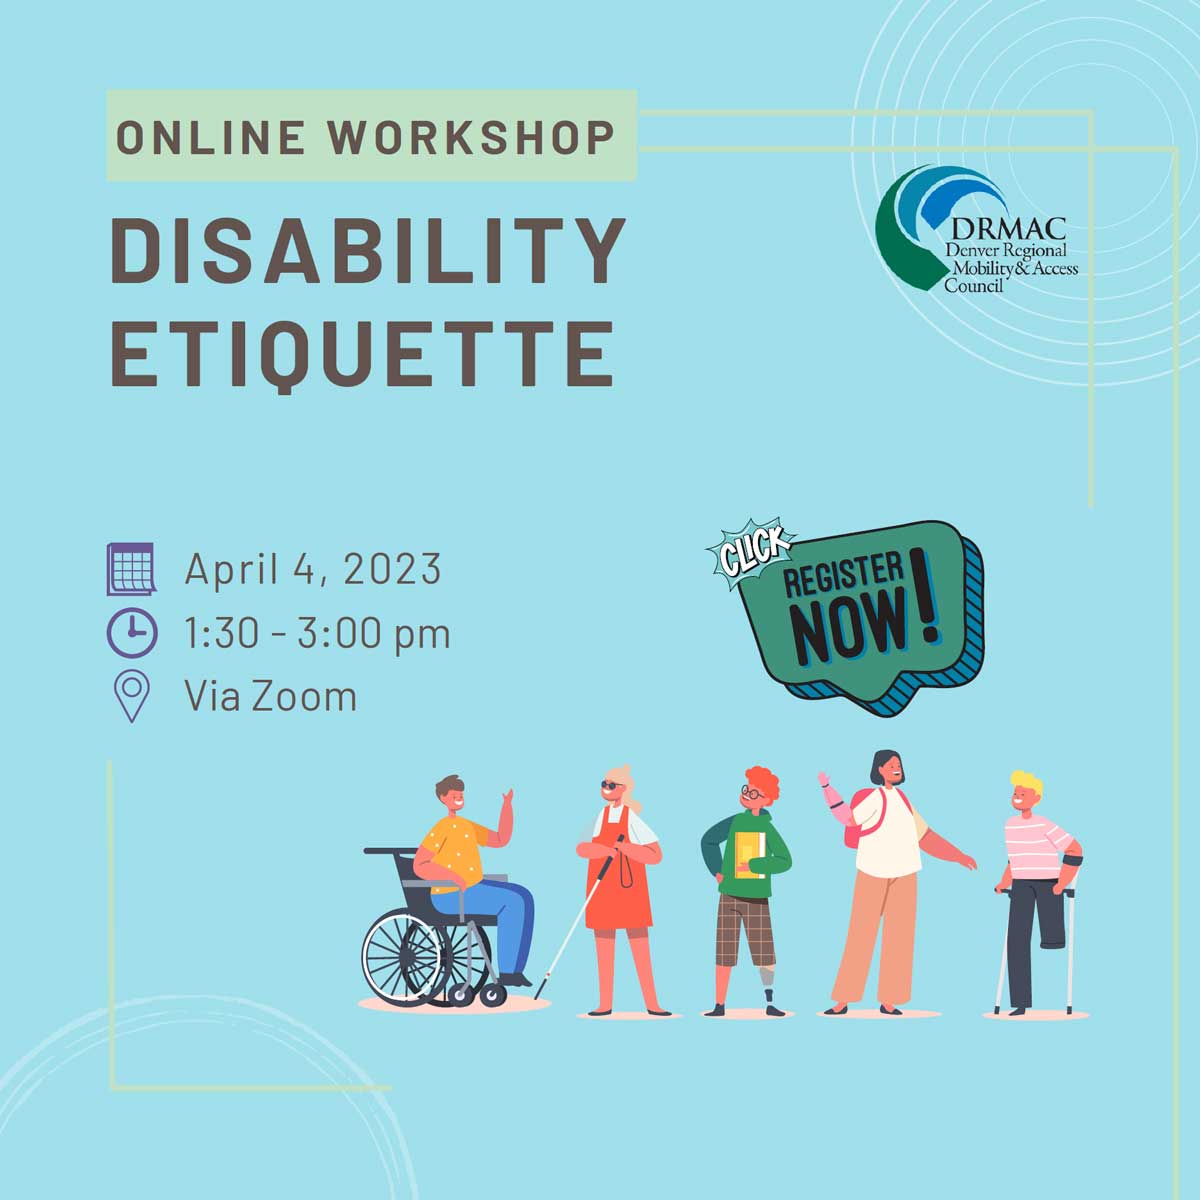 Disability Etiquette Workshop April 4, 2023